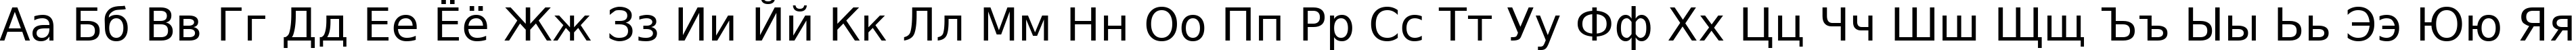 Пример написания русского алфавита шрифтом DejaVu Sans